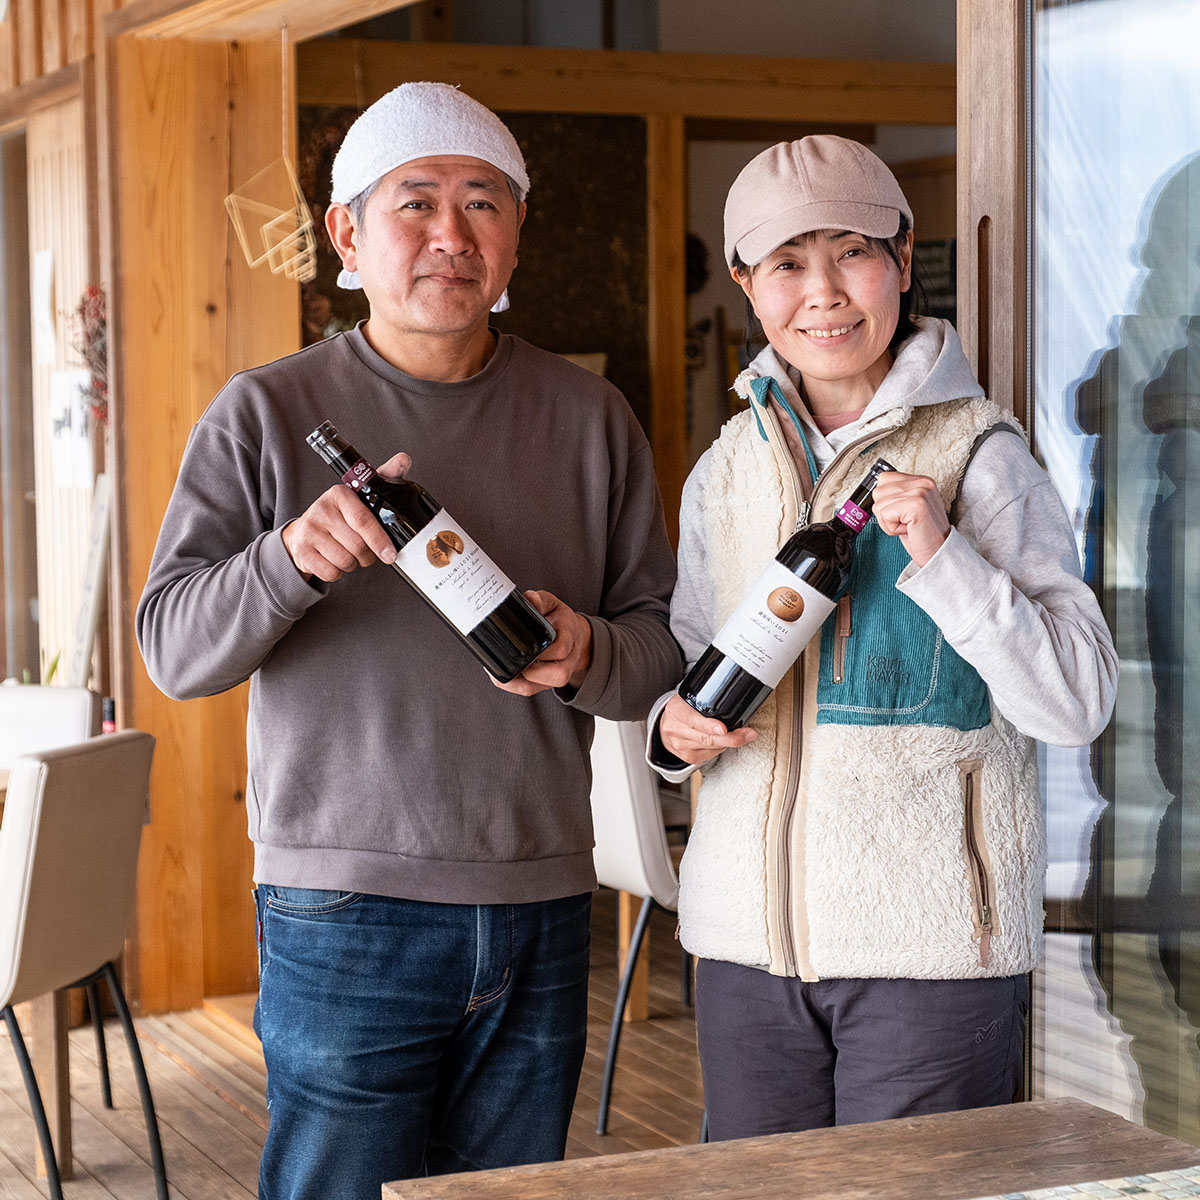 「ワインづくりを通して農産物の価値も高めたい」と語る福島有造さん・陽子さん。